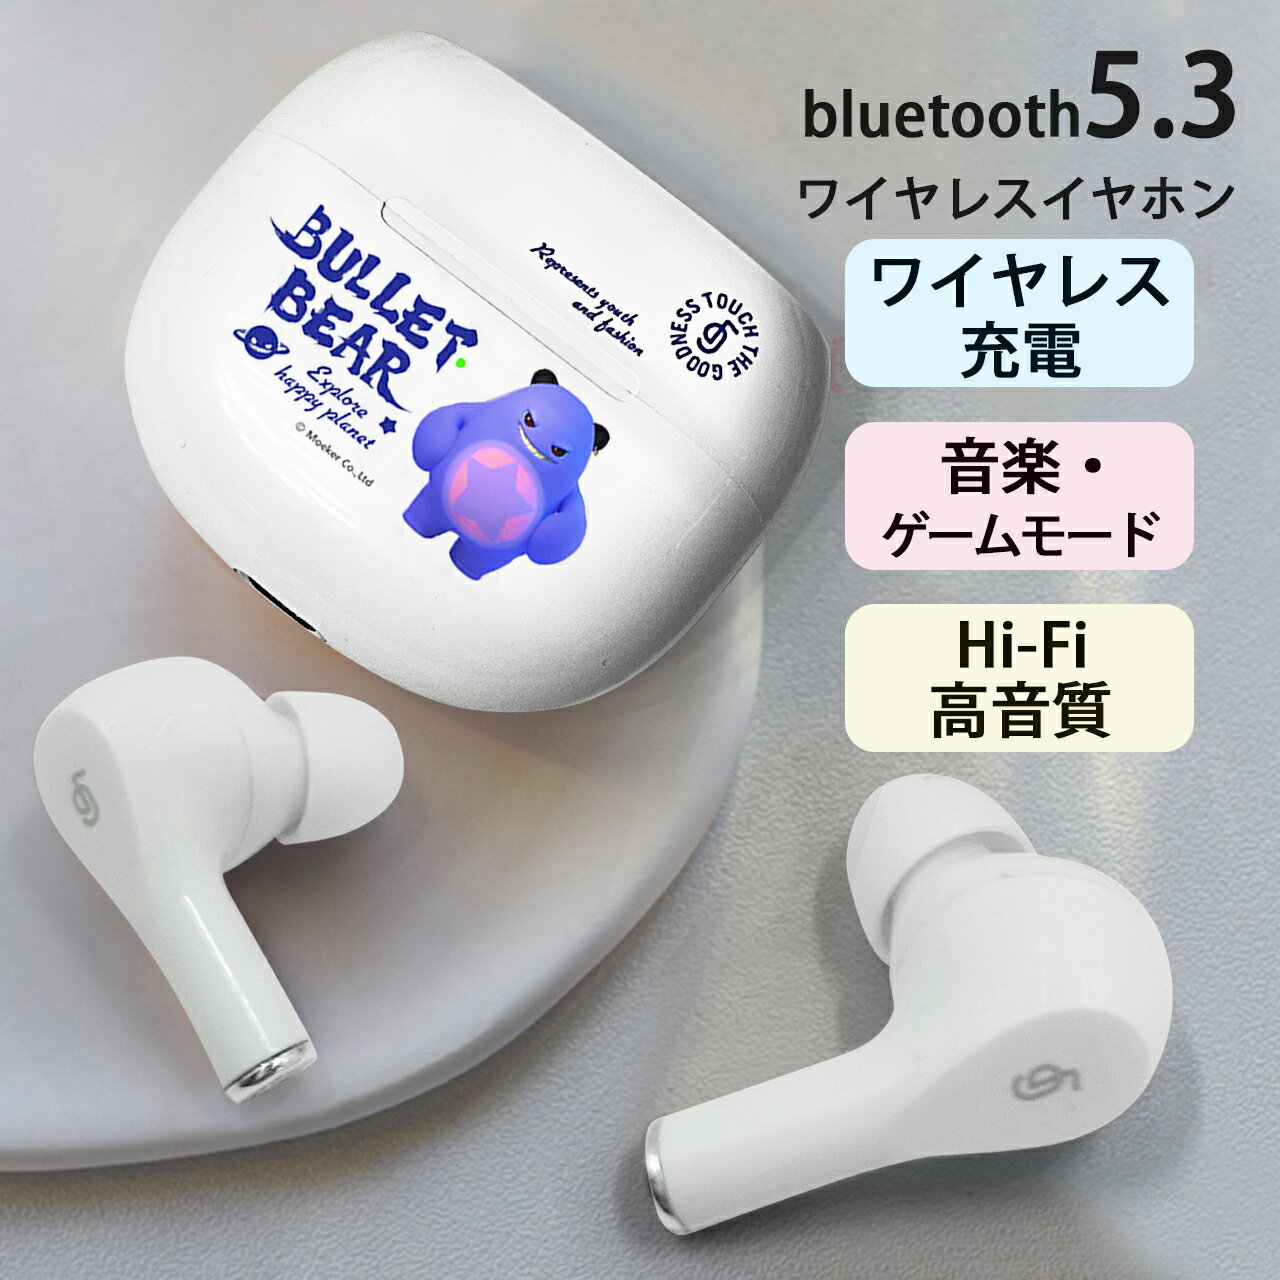 ワイヤレスイヤホン Bluetooth5.3 ENCノイズキャンセリンク 瞬間接続 bluetooth イヤホン ワイヤレス 低遅延 マイク付きノイズキャンセリング 自動ペアリング 軽型 ブルートゥース イヤホン 両耳通話 片耳 IPX7防水